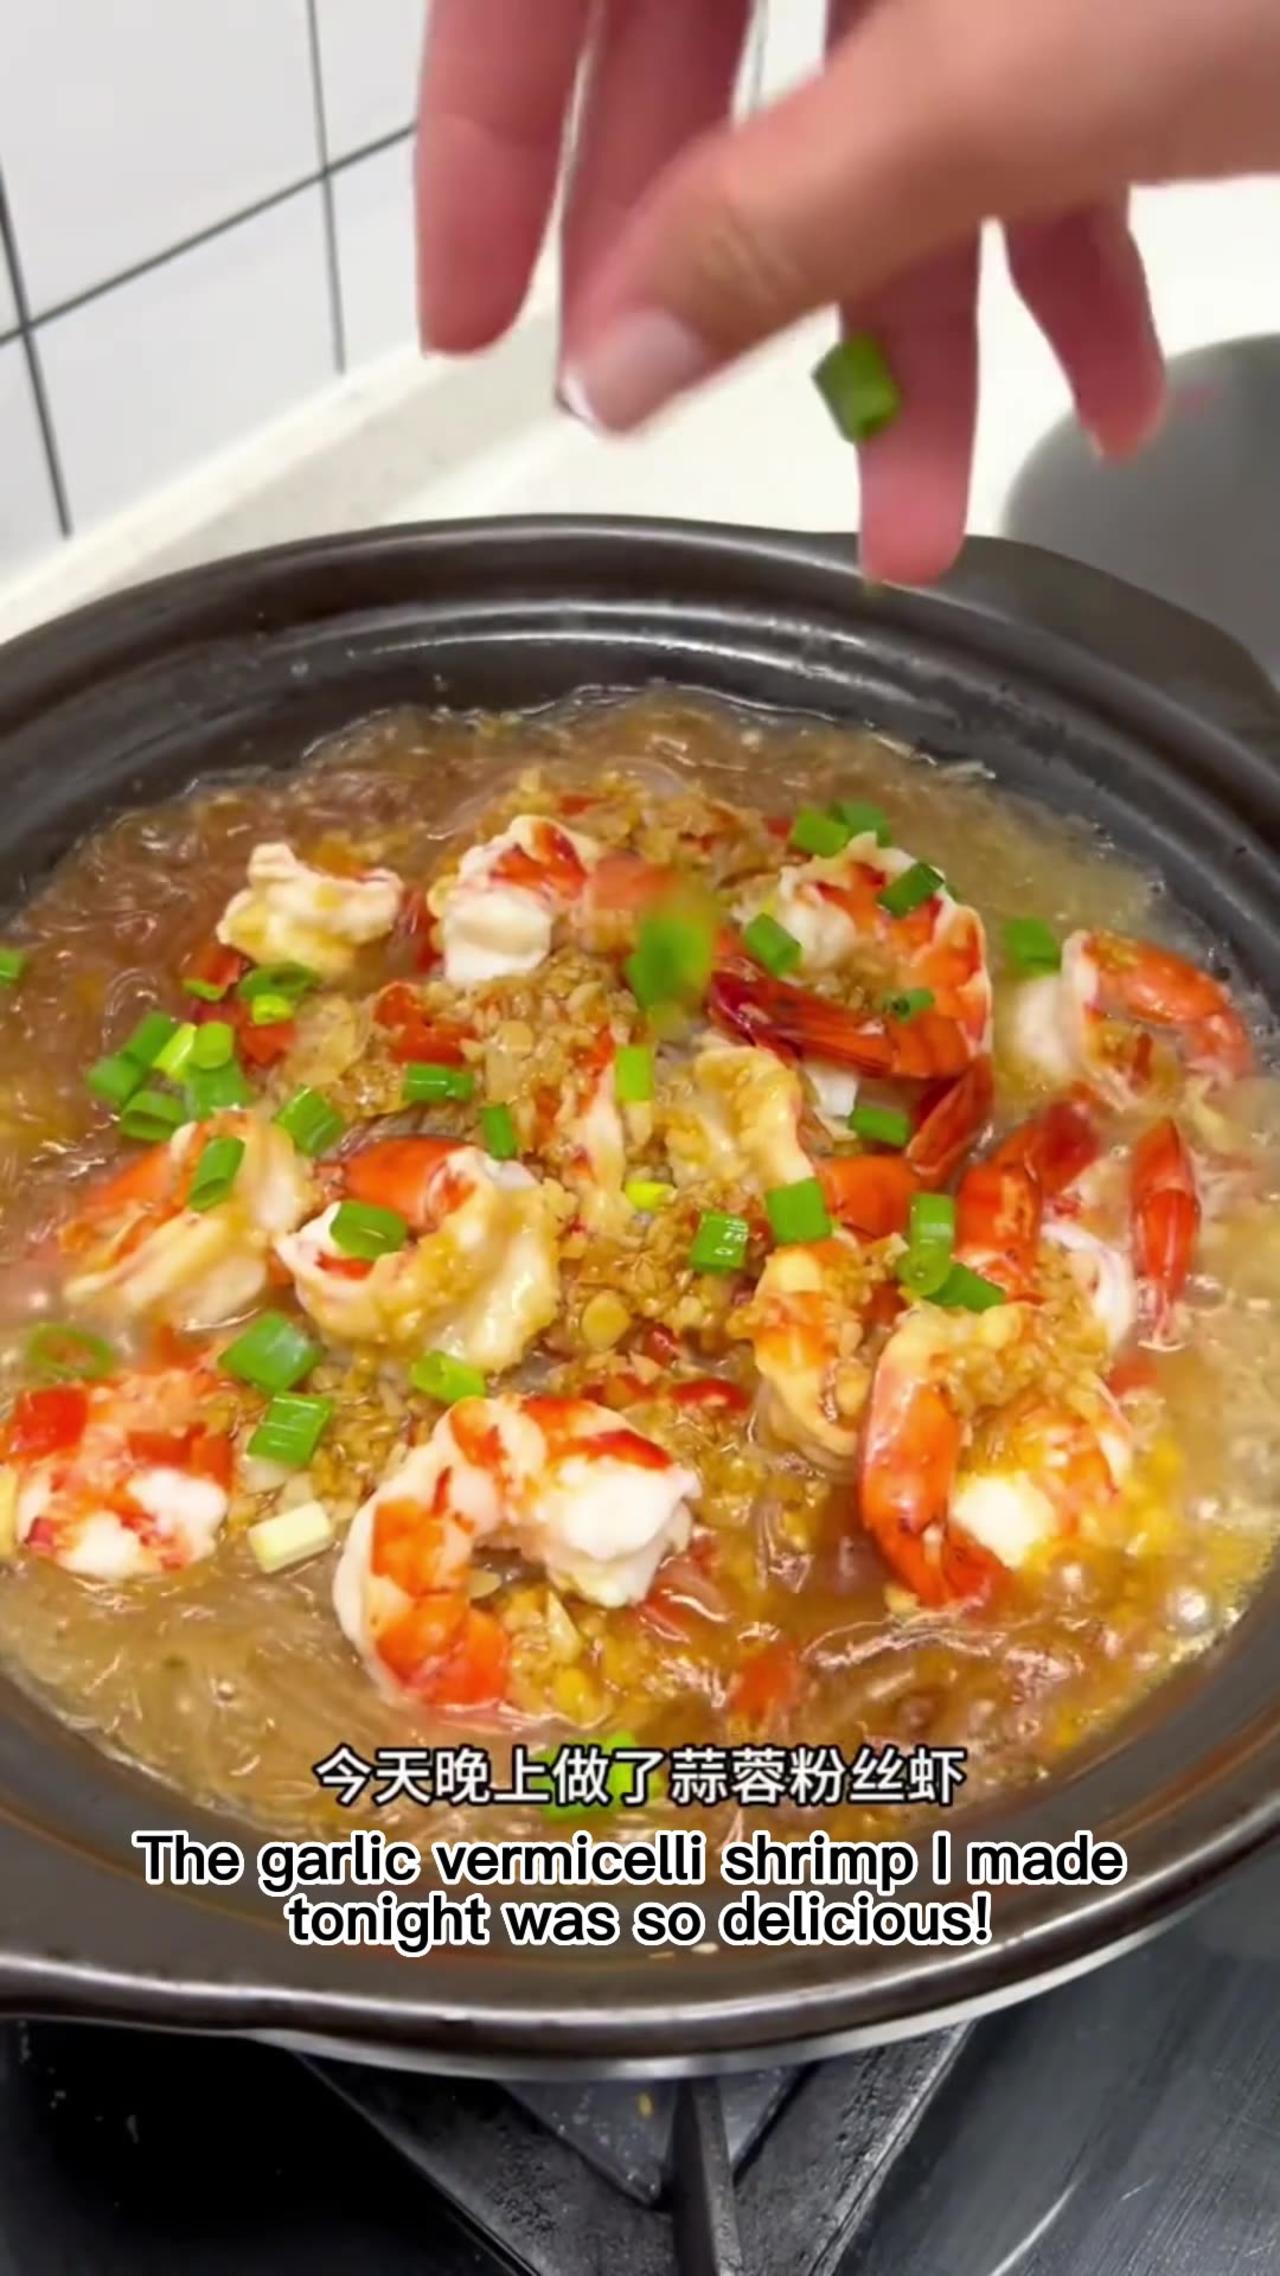 DIY Delicious Chinese Cuisine Tutorial Series:Garlic Vermicelli Shrimp